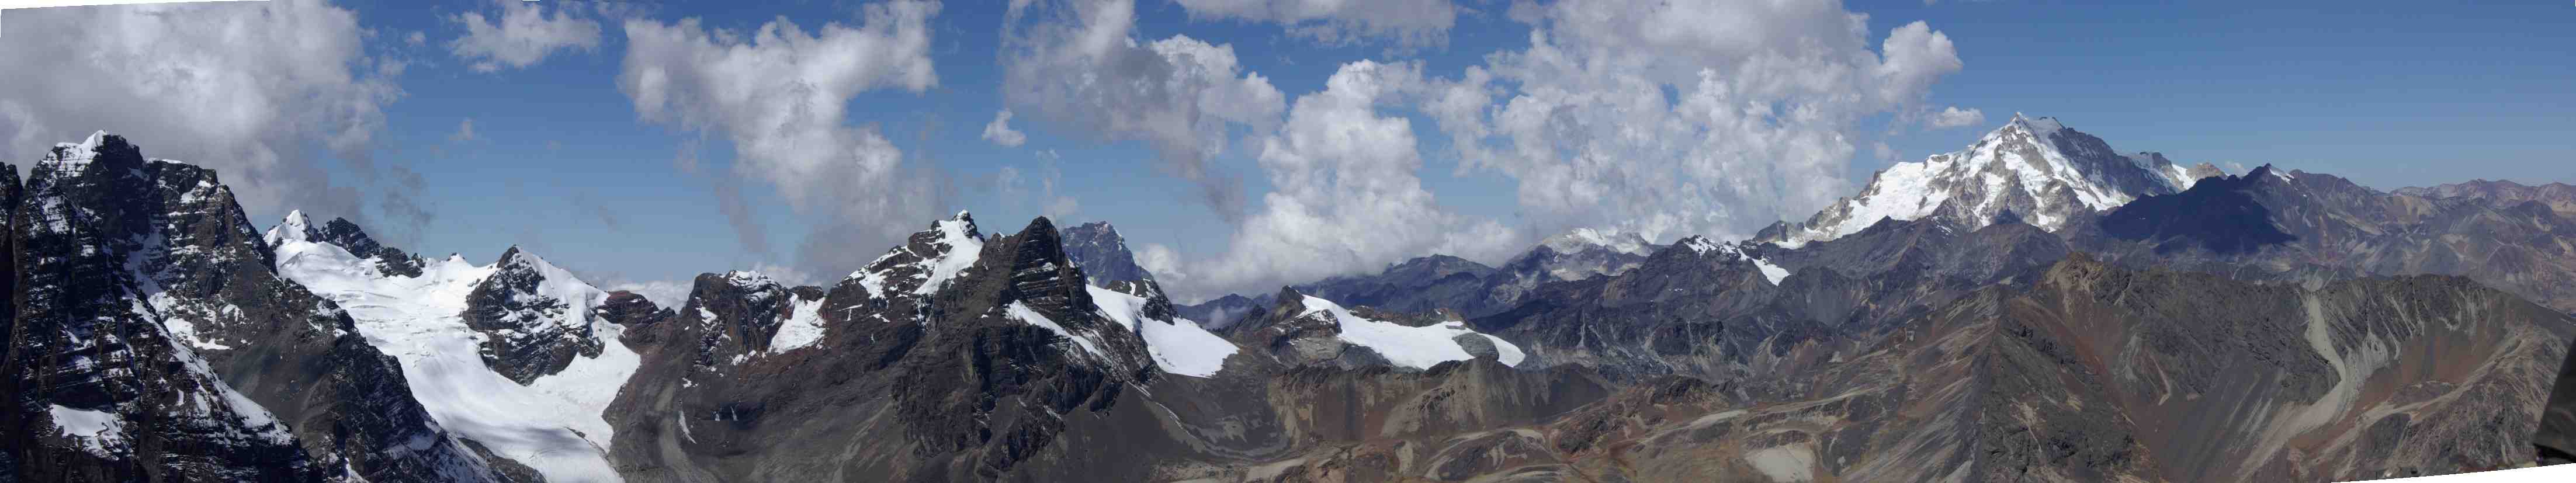 Panorama depuis le pic des Autrichiens (5342 m), le 11 août 2008. Vue sur le pic Wyoming (sommet rocheux). Puis viennent le Tarija (5320 m) et l’Alpamayo (5410 m) dont descend le glacier. Ensuite les pics Jawaja (5250 m) et Illusion (5336 m). La montagne visible juste à sa droite et en arrière-plan est le Tikimani (5550 m). La montagne au centre avec le grand névé est le Zongo Jisthaña (5140 m). Ensuite, tout au fond avec de la neige, le Kunatinquta (5336 m). Sur la droite, plus près de nous avec une falaise rocheuse, le Jamal Salto. Le cliché se termine bien évidemment par le Huayna Potosí (6080 m)